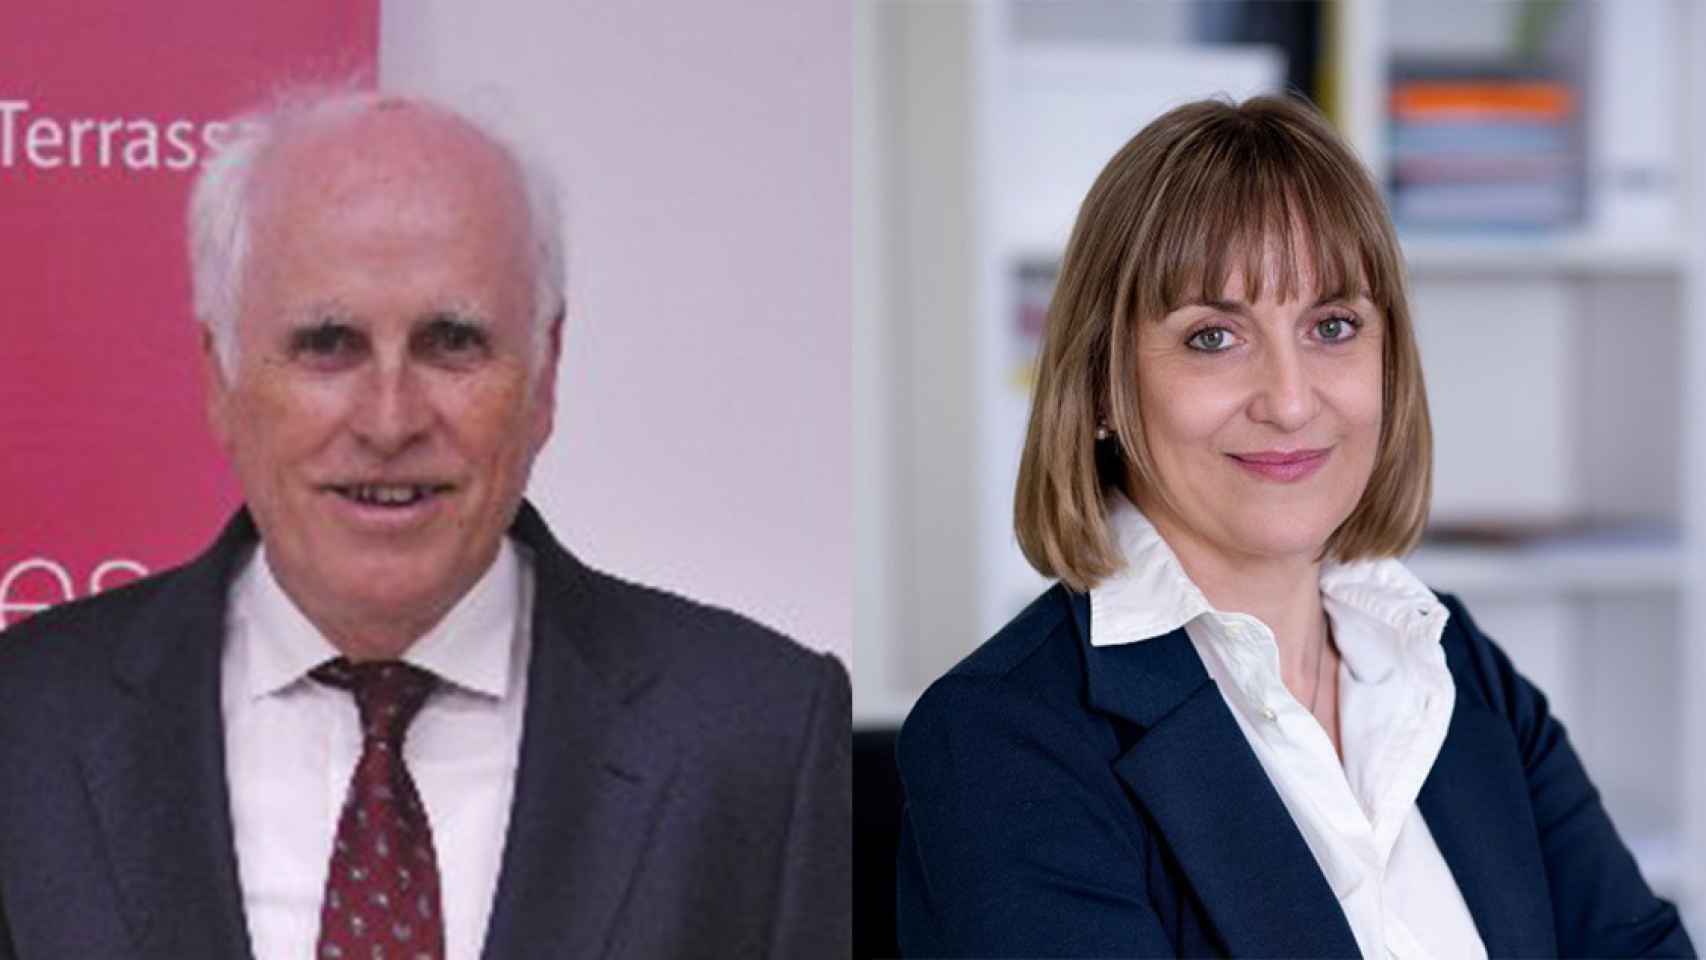 Ramon Talamàs y Natàlia Cugueró, candidatos a la presidencia de la Cámara de Comercio de Terrassa